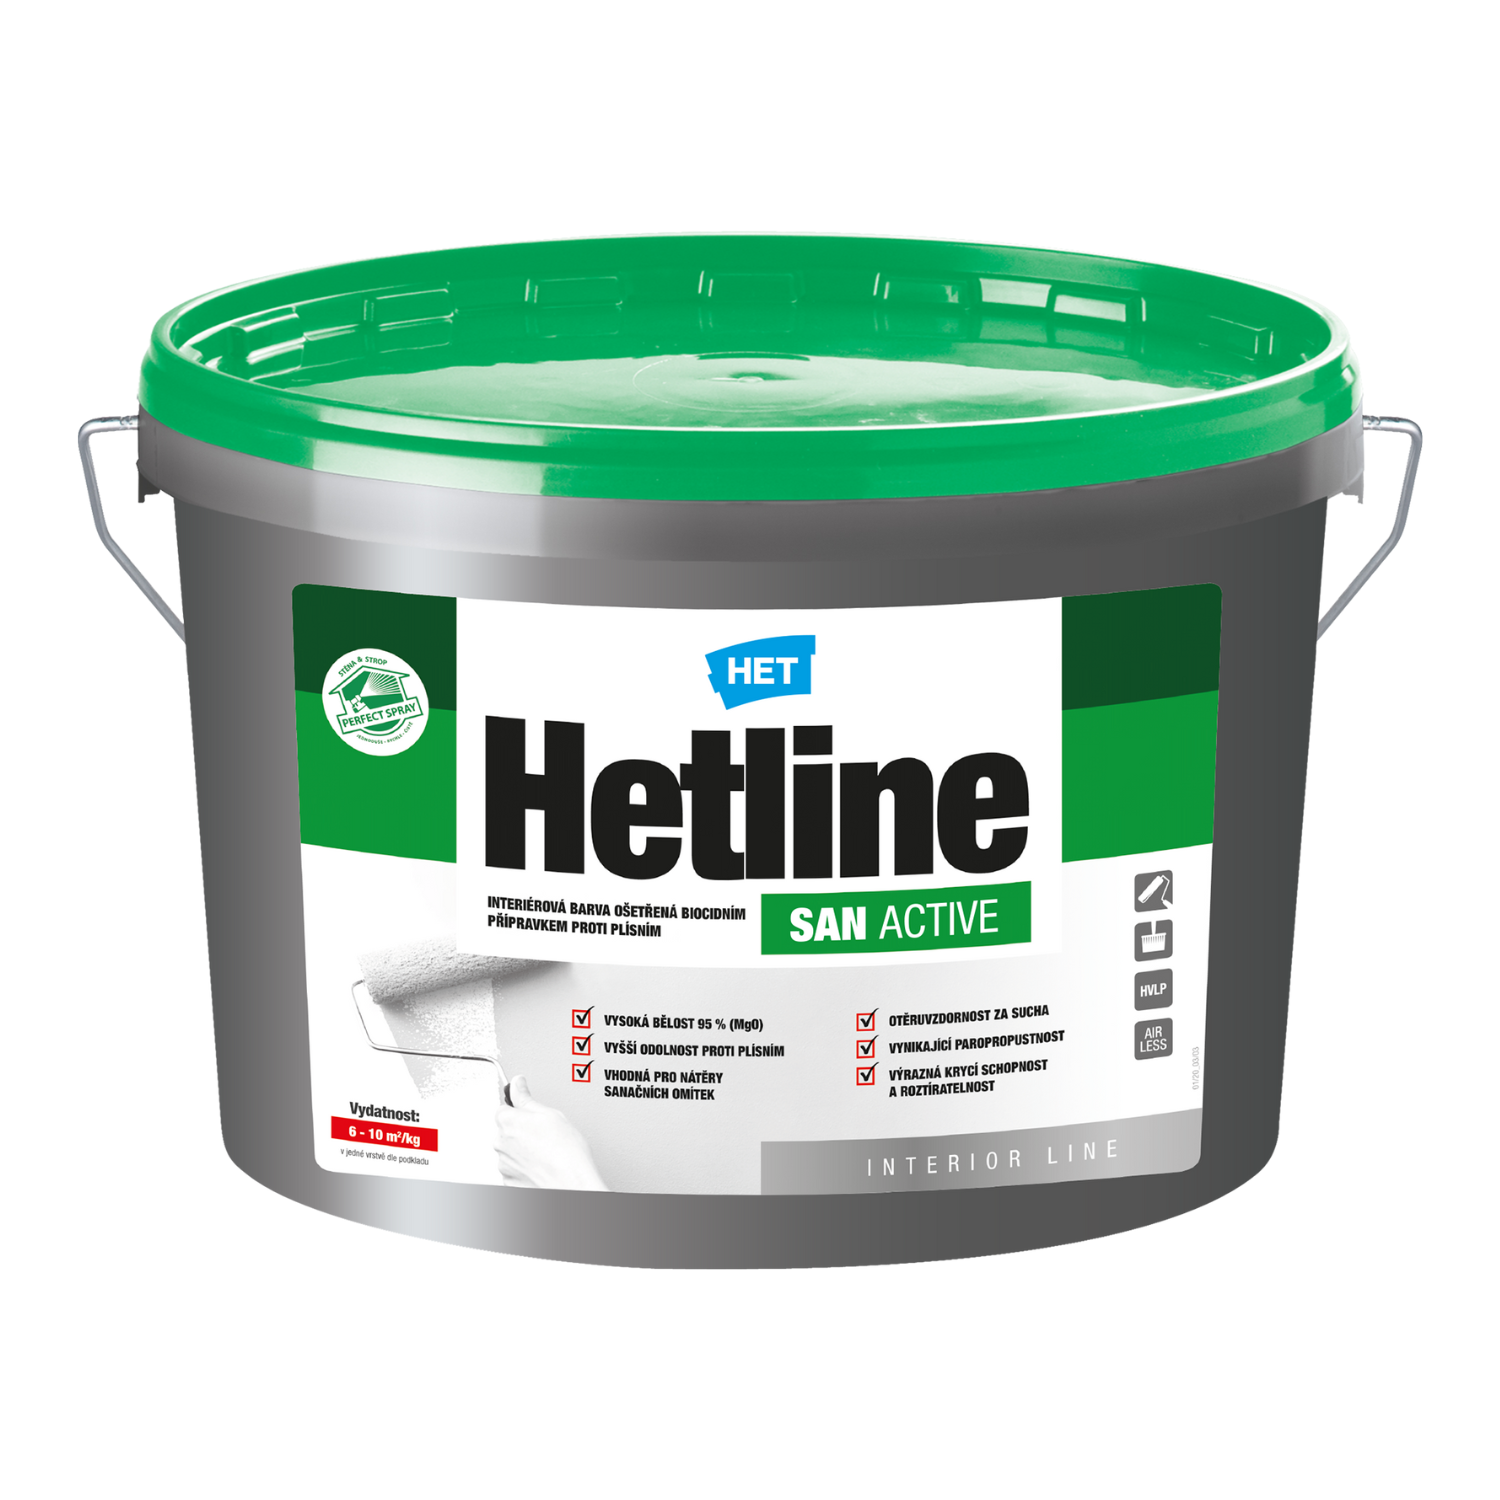 HET Hetline SAN ACTIVE interiérová biela farba ošetrená biocídnym prípravkom proti plesniam 1,5 kg